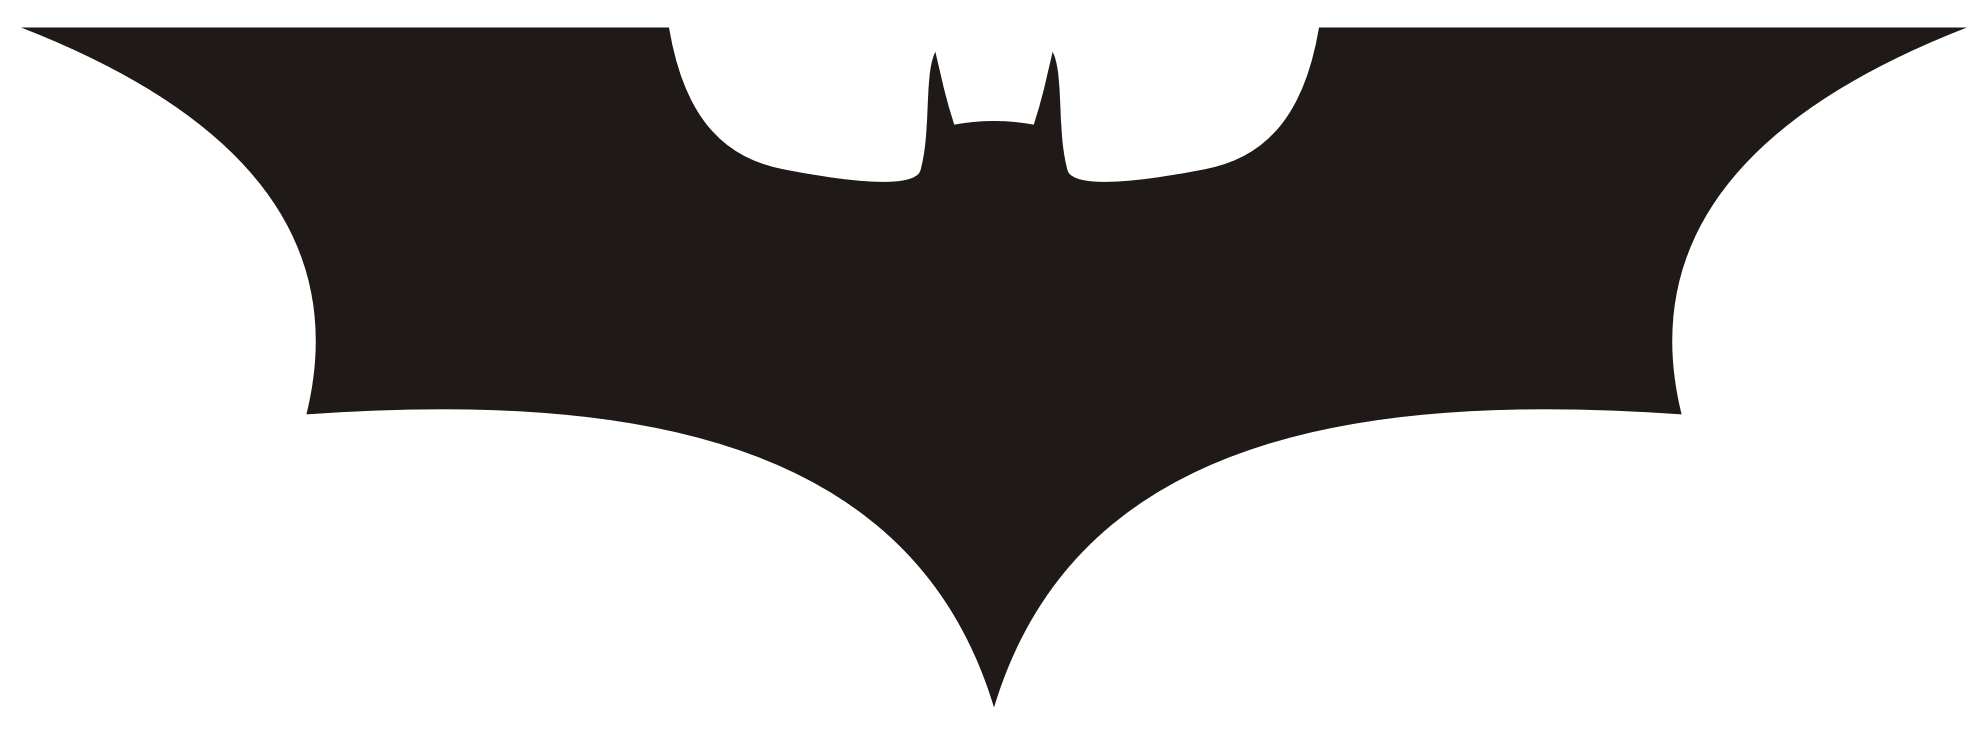 Batman logo outline clipart